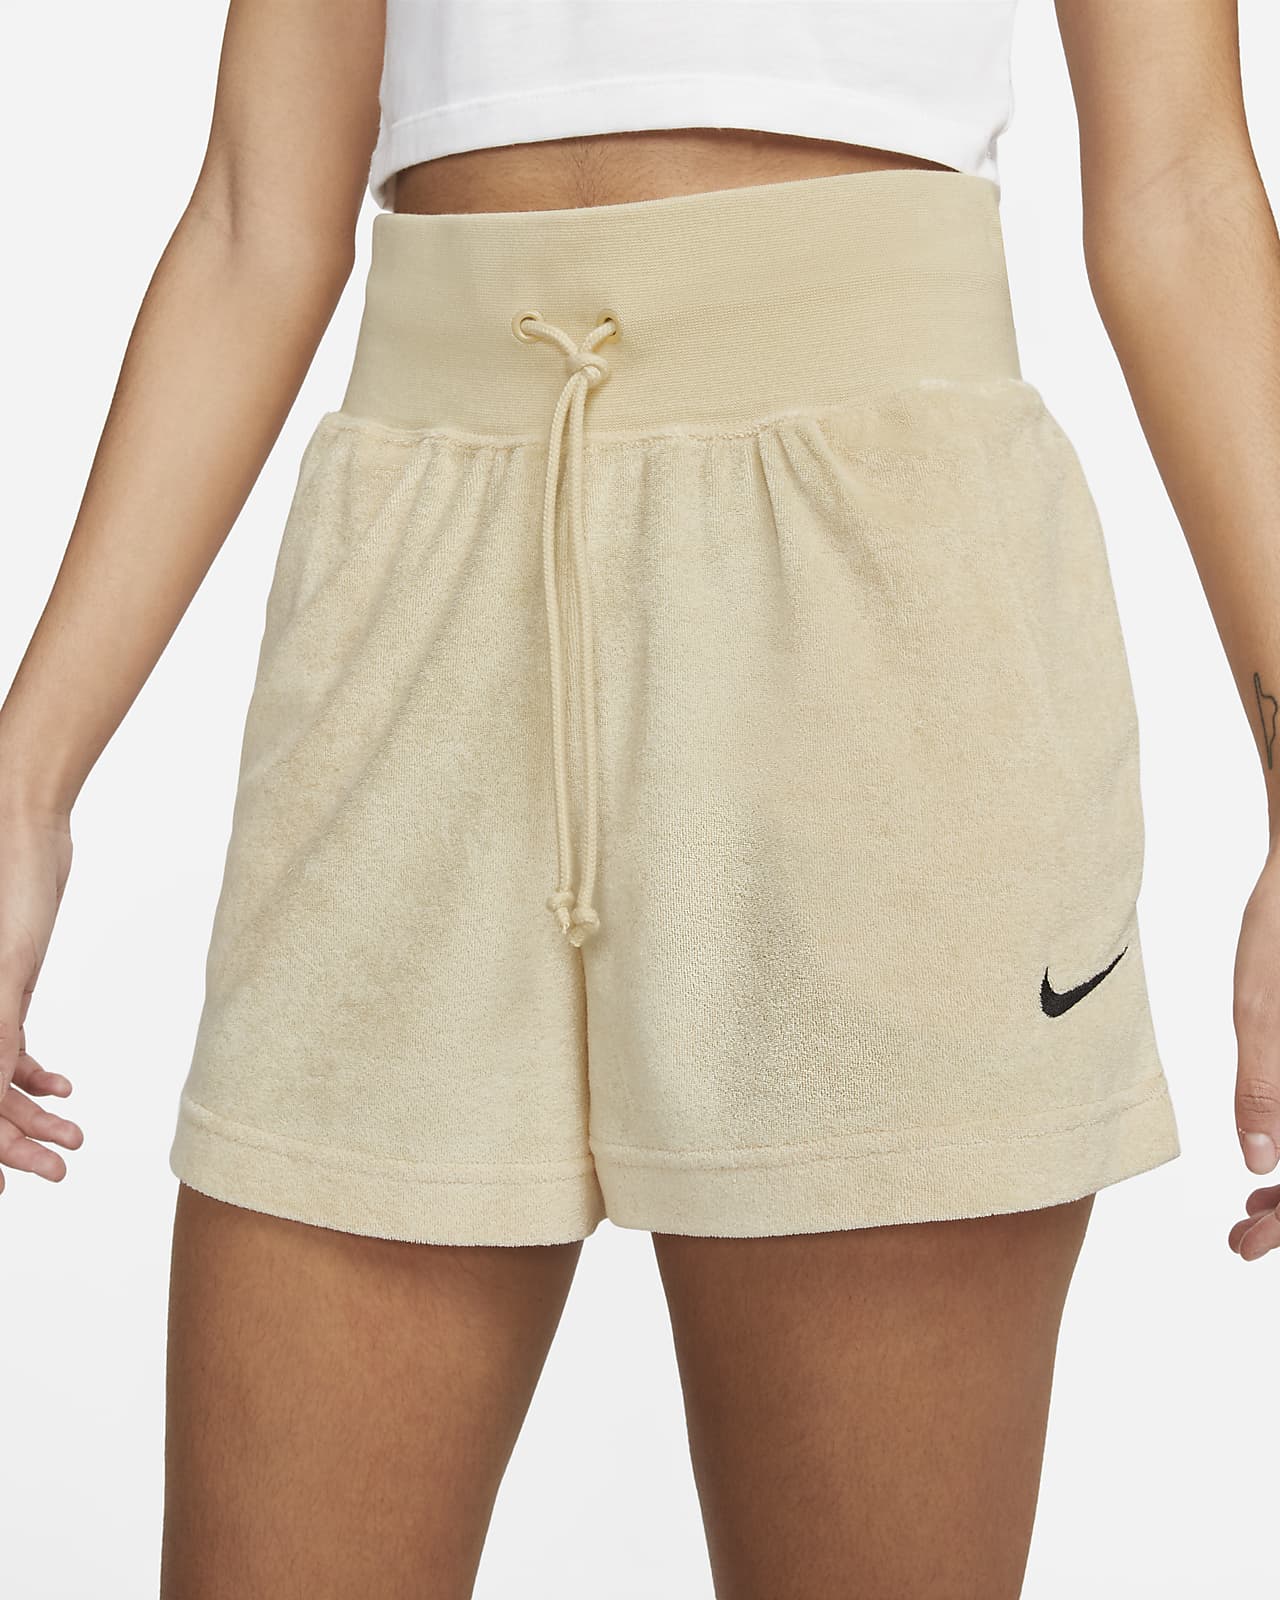 Appal Persona schrijven Nike Sportswear badstofshorts voor dames. Nike NL